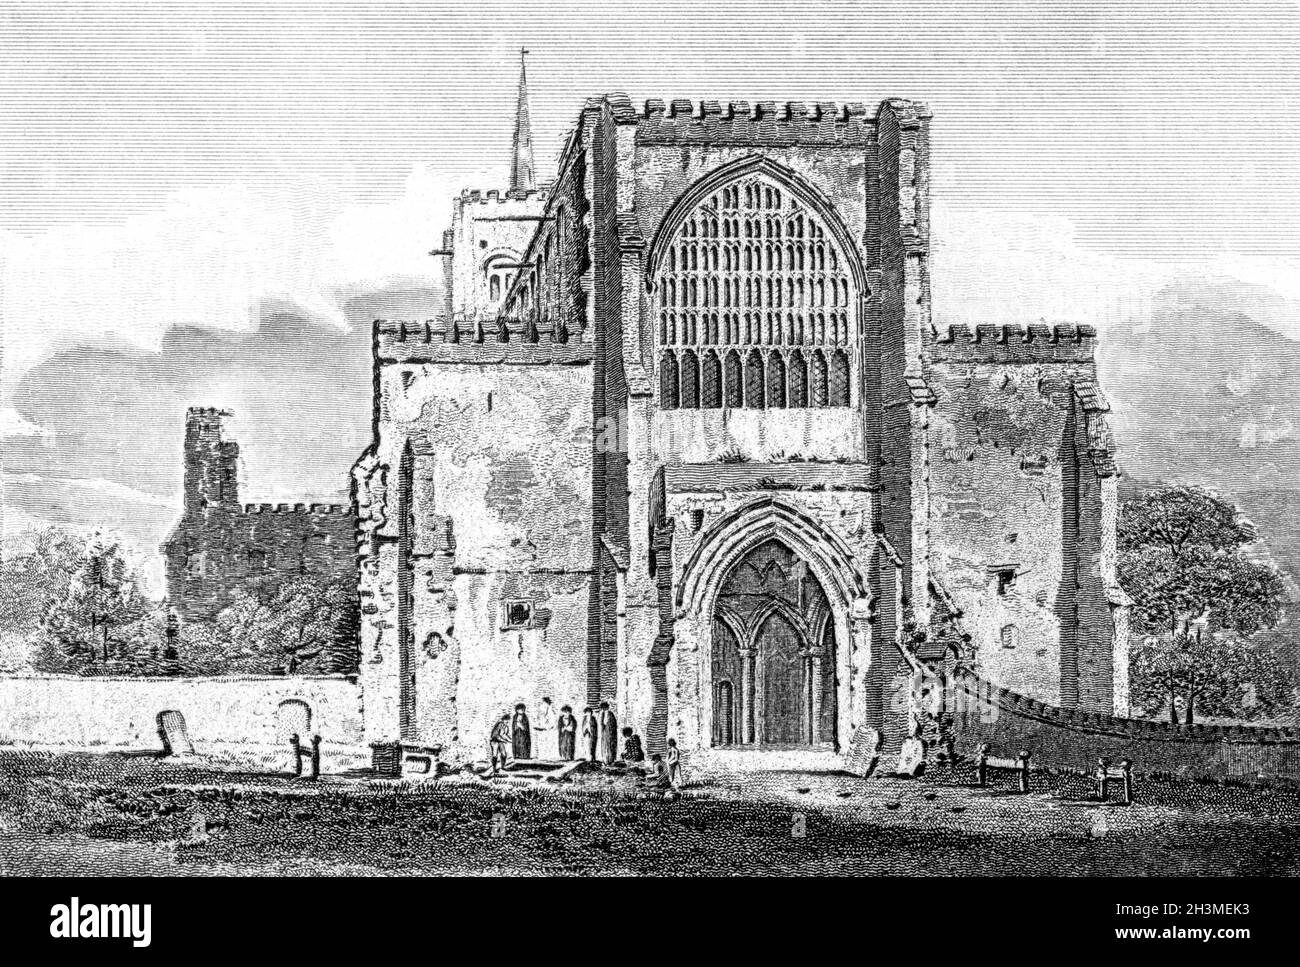 Ein Stich der St Albans Abbey Church, Hertfordshire UK, gescannt in hoher Auflösung aus einem Buch, das 1812 gedruckt wurde. Für urheberrechtlich frei gehalten. Stockfoto